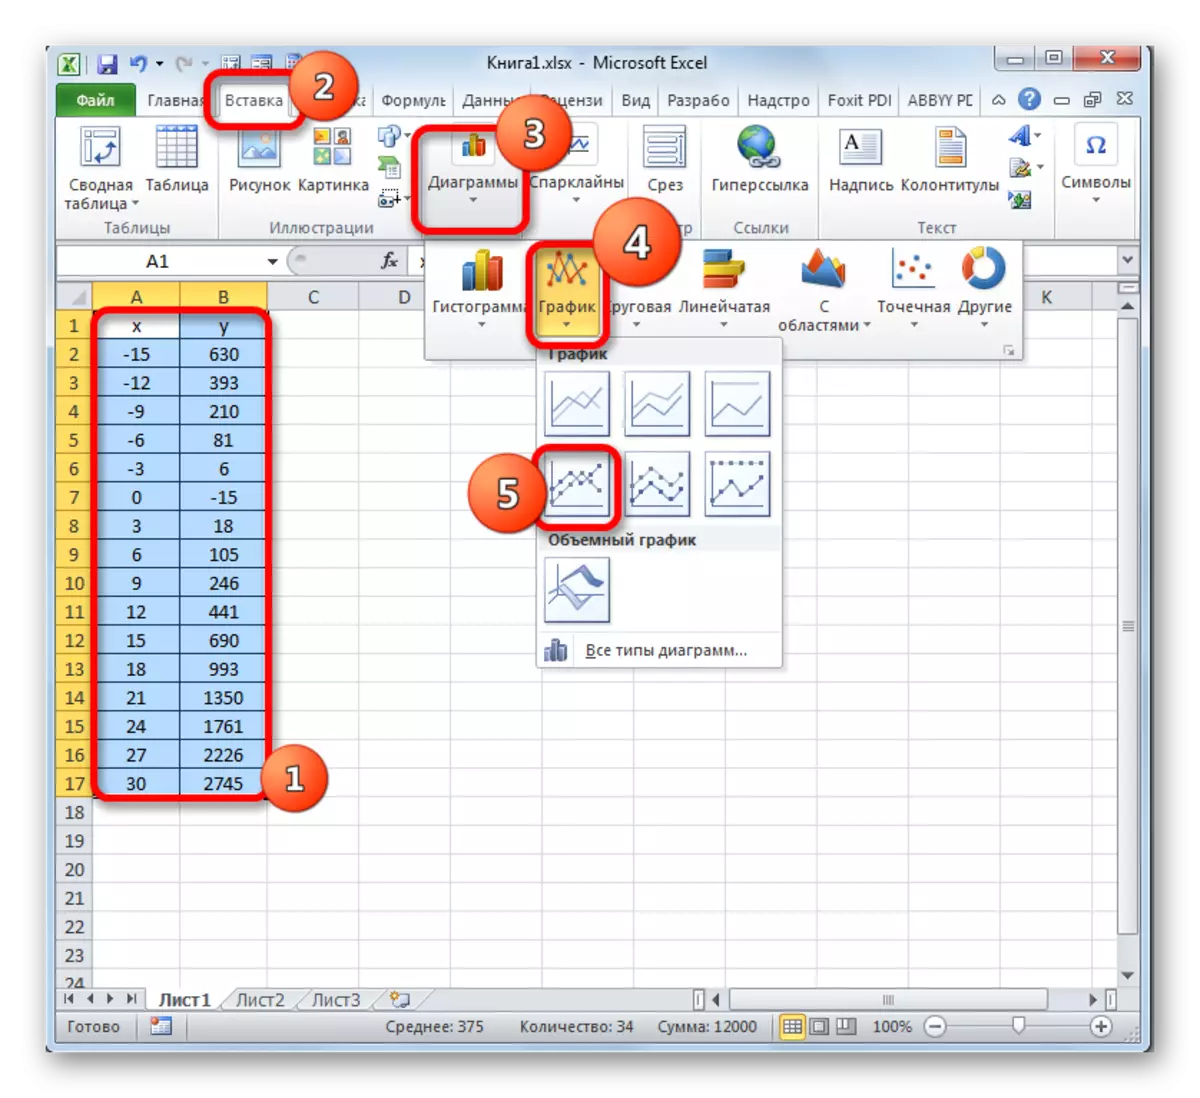 Övergång till konstruktion av ett diagram med markörer i Microsoft Excel